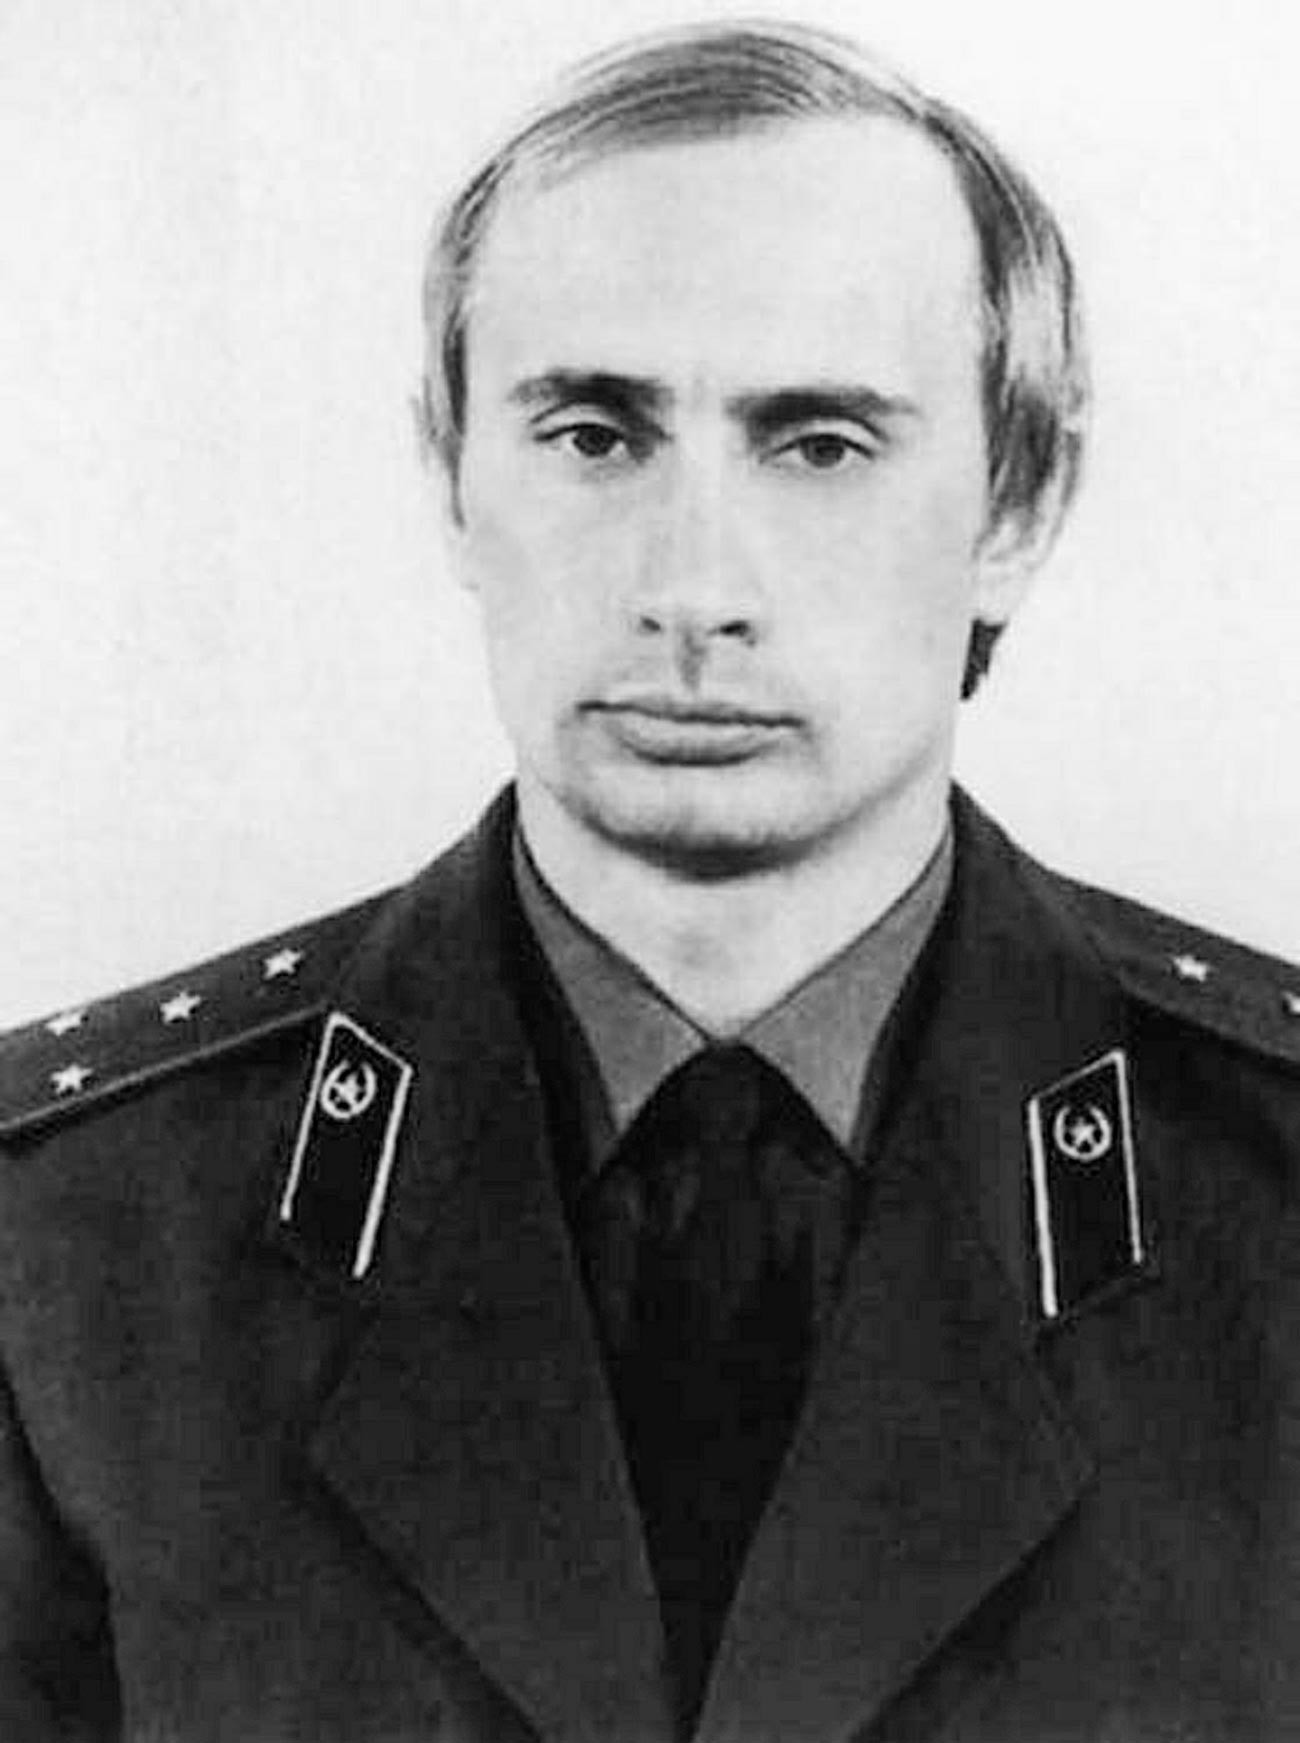 A young Vladimir Putin in a KGB uniform.